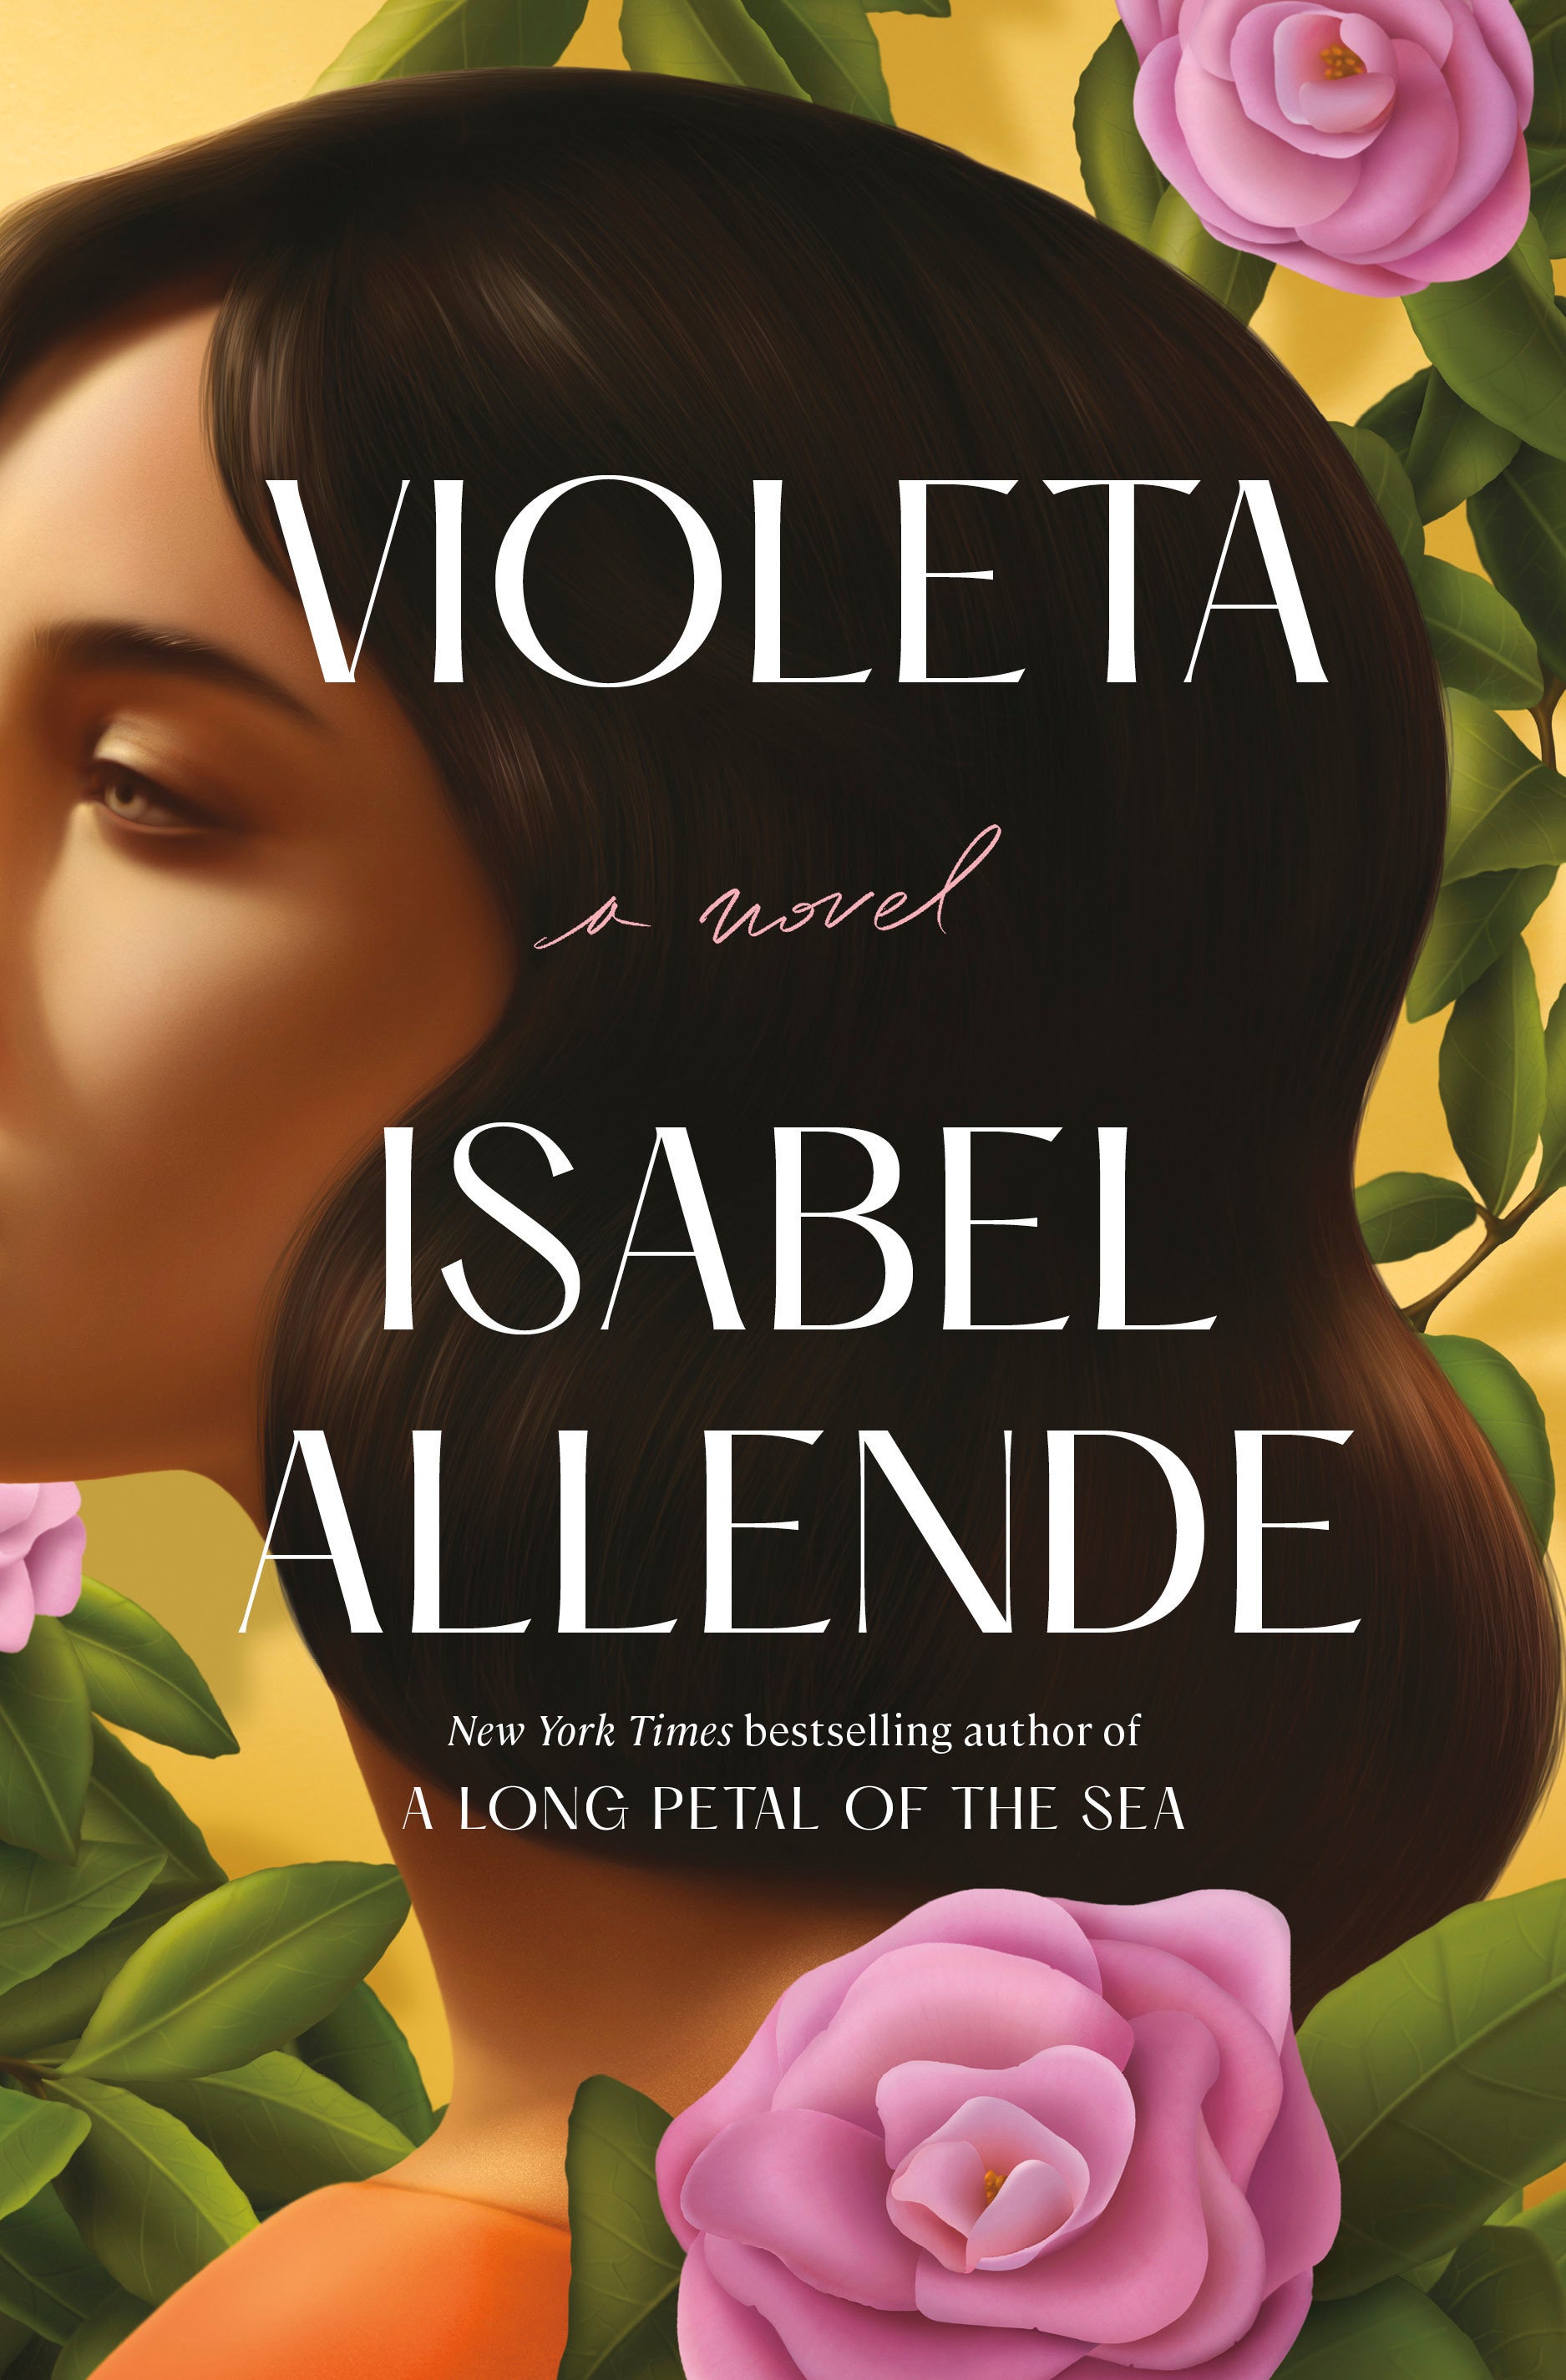 Book Review - Violeta